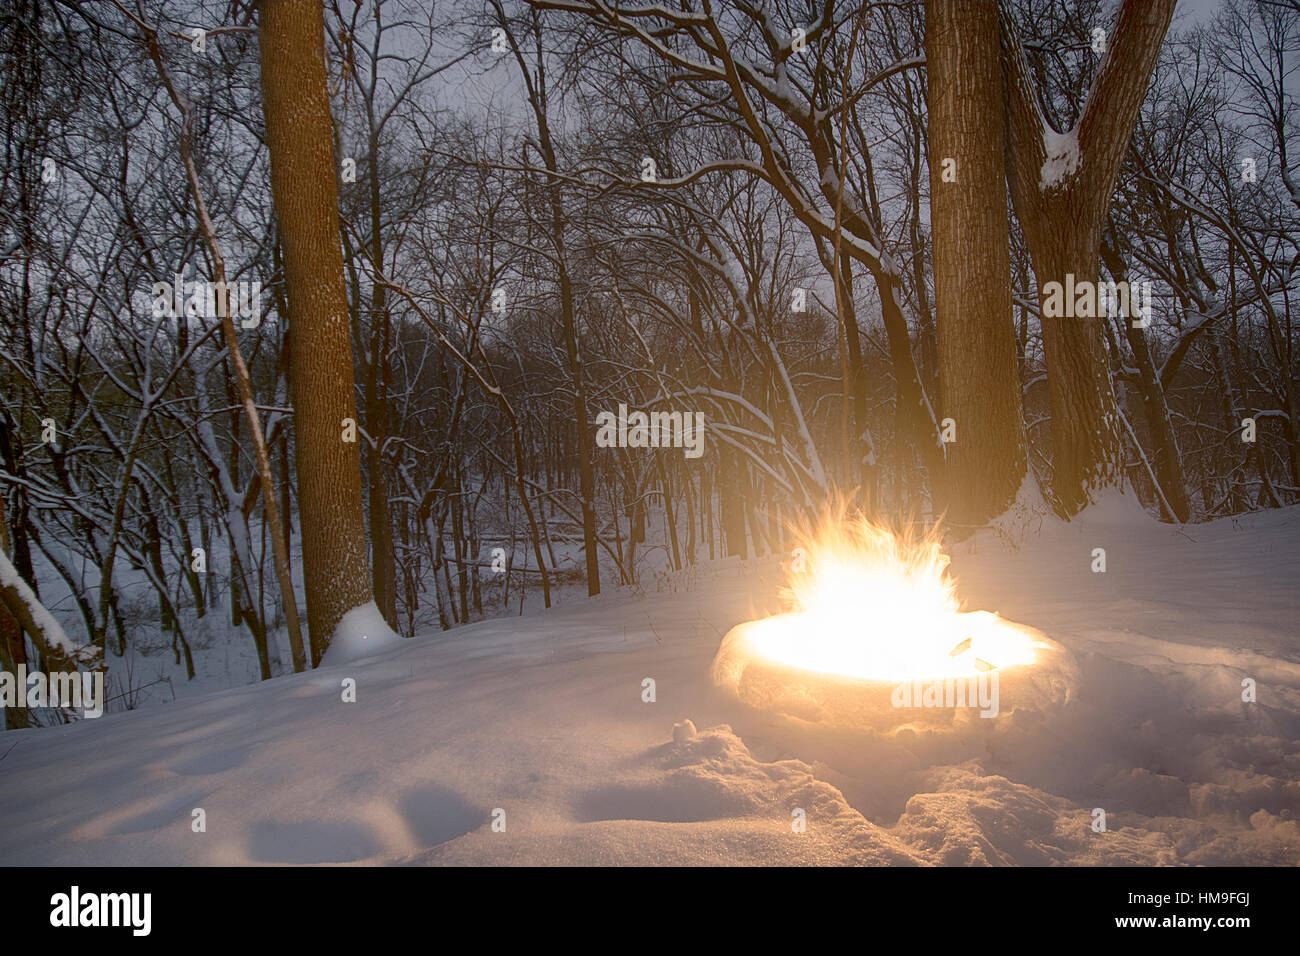 La masterizzazione di fuoco caldo circondato da neve in zona boscosa. Foto Stock